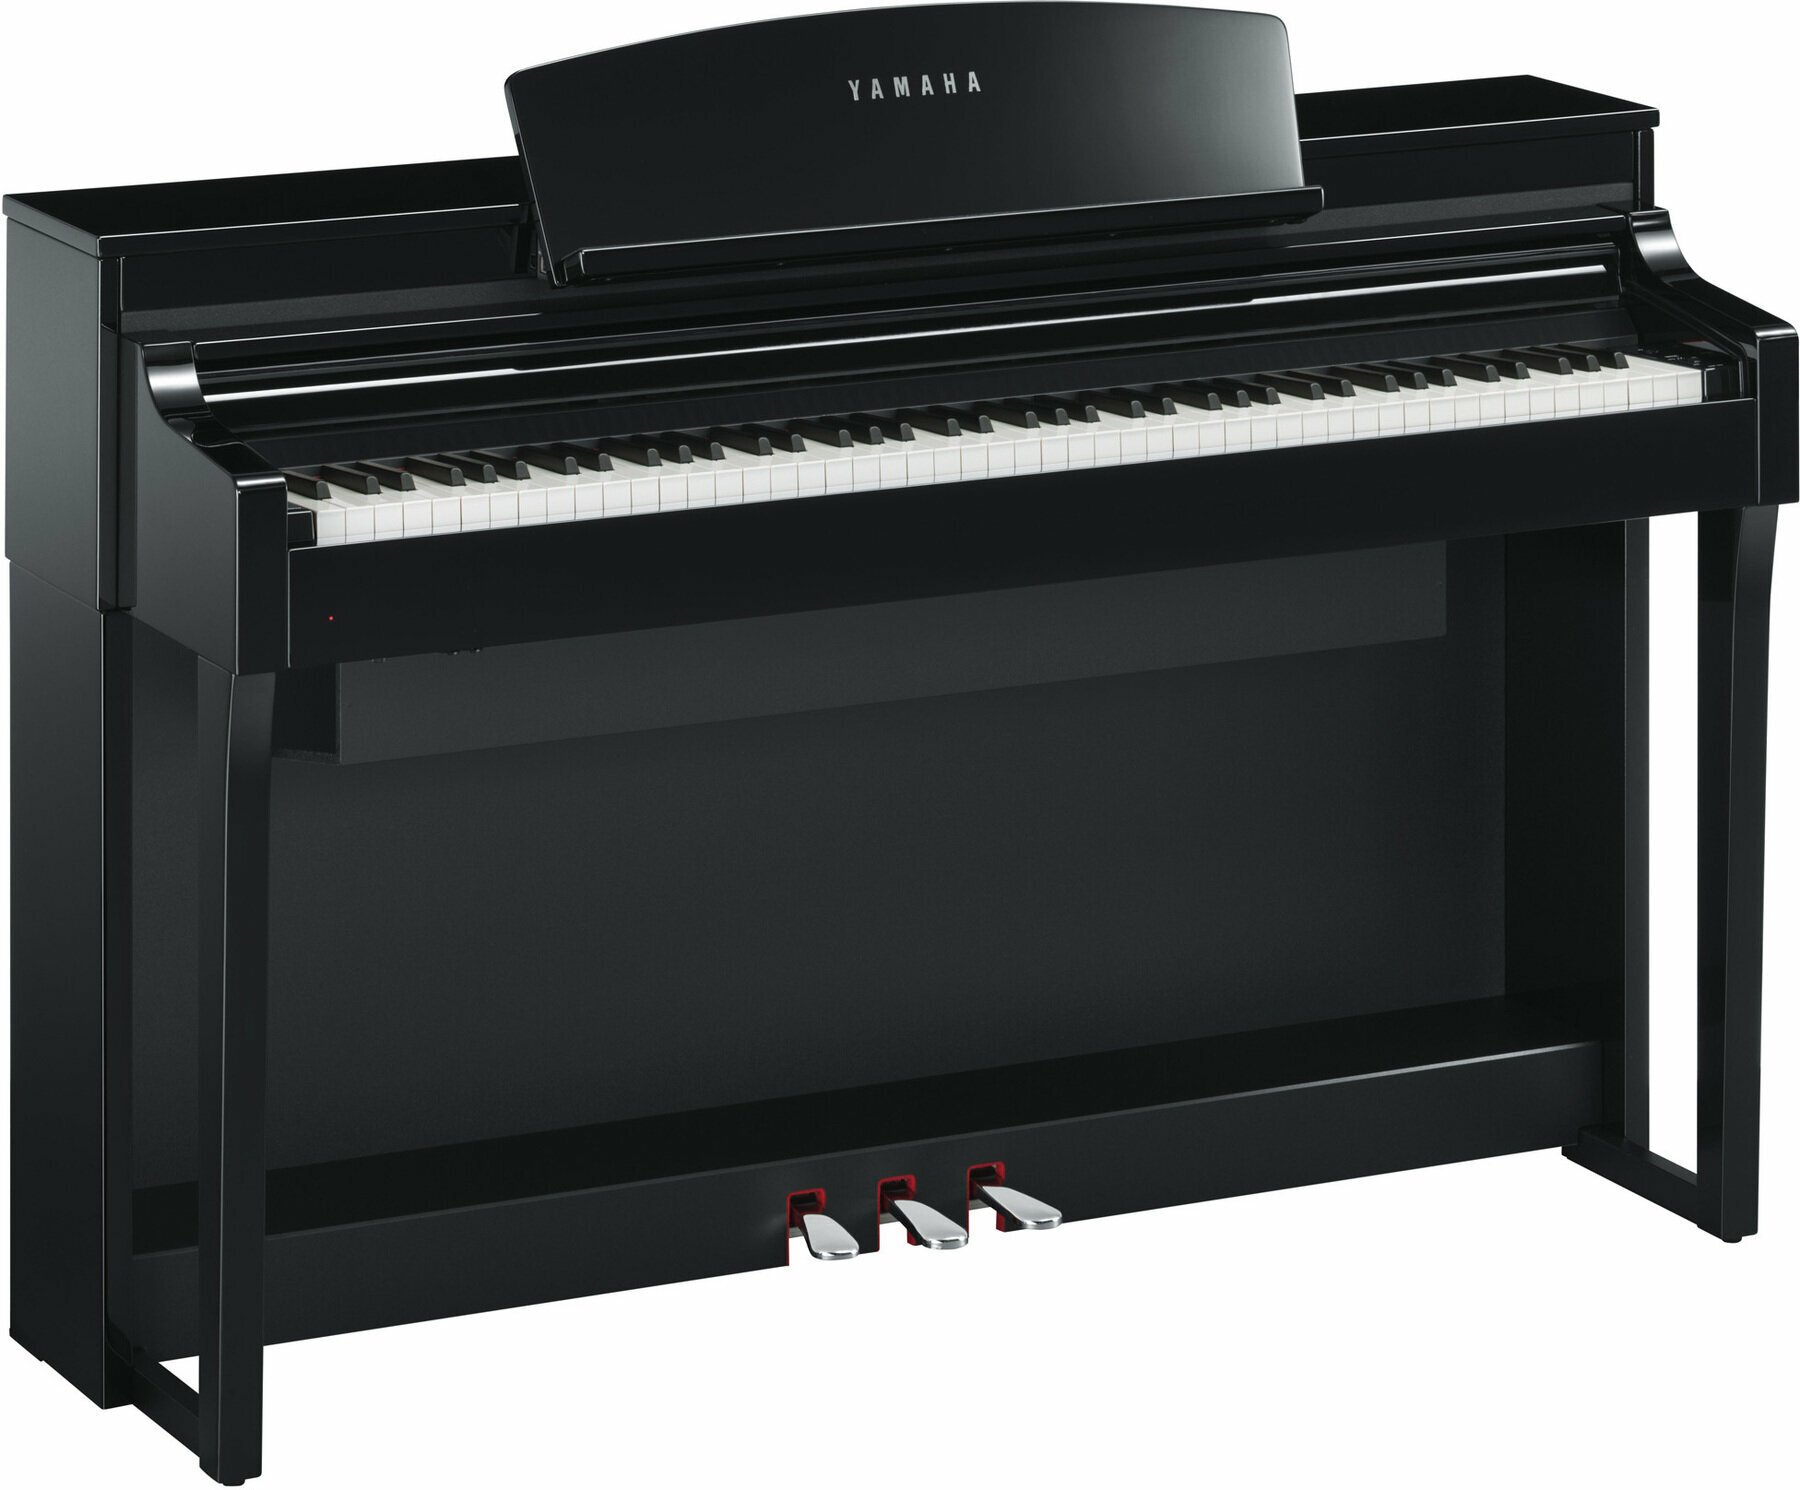 Ψηφιακό Πιάνο Yamaha CSP 170 Polished Ebony Ψηφιακό Πιάνο